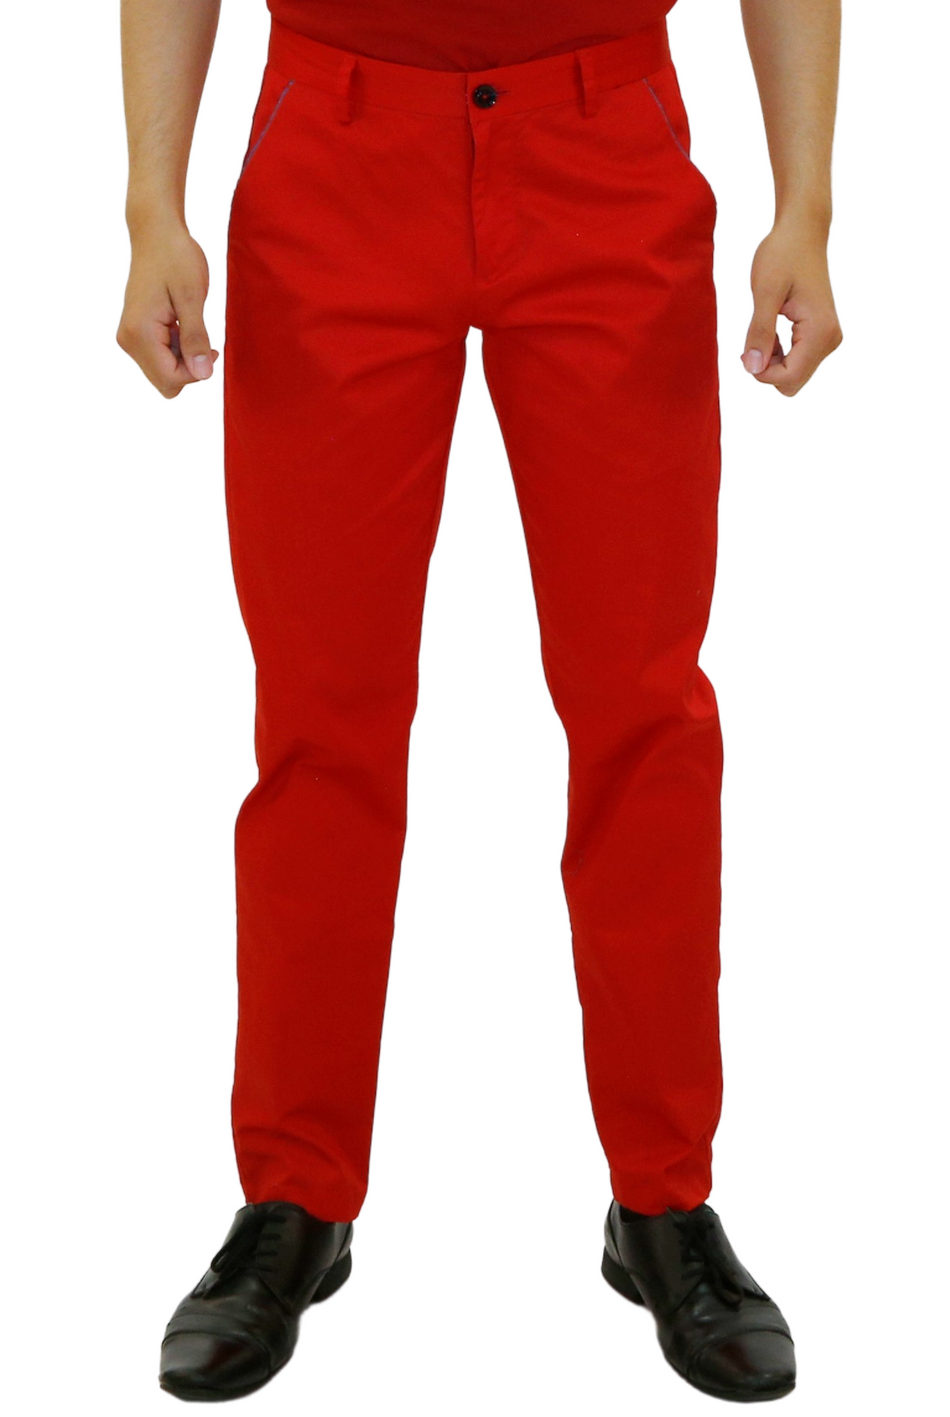 - Red Pants for Men - 183122 - www.bespokemoda.com– BESPOKE MODA